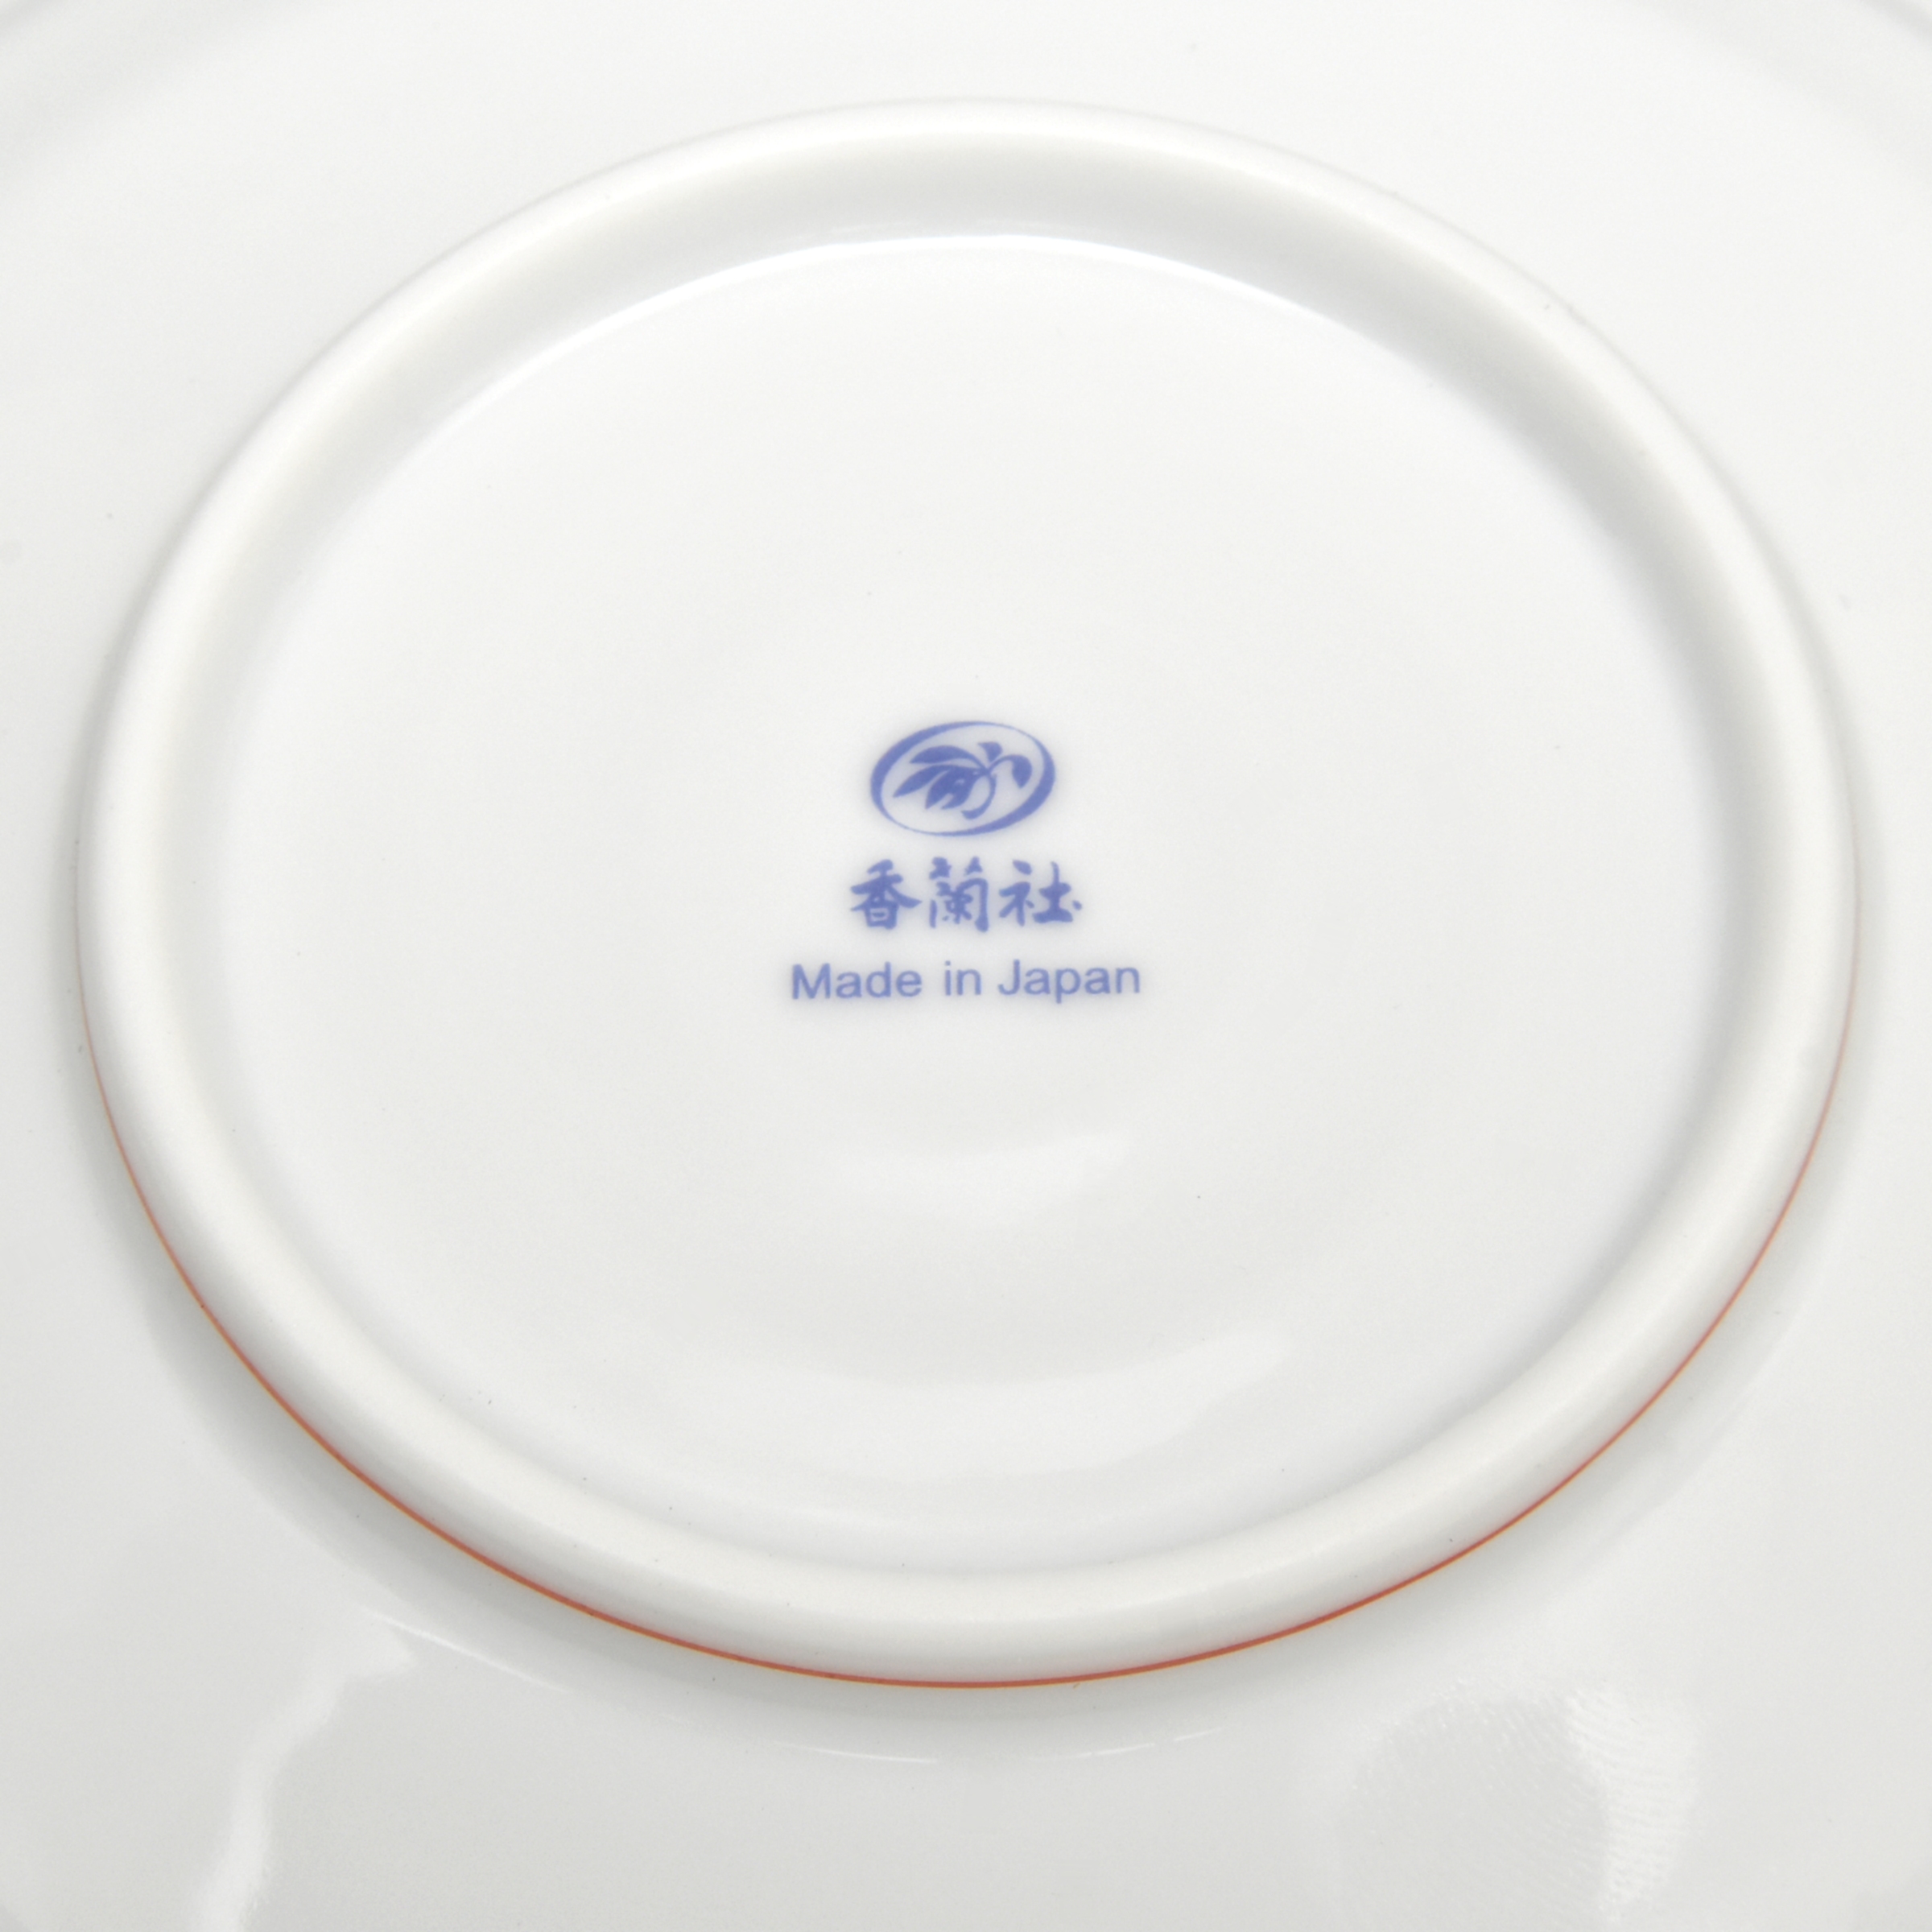 お皿の底面には香蘭社のオリジナル商品のマークがあります。